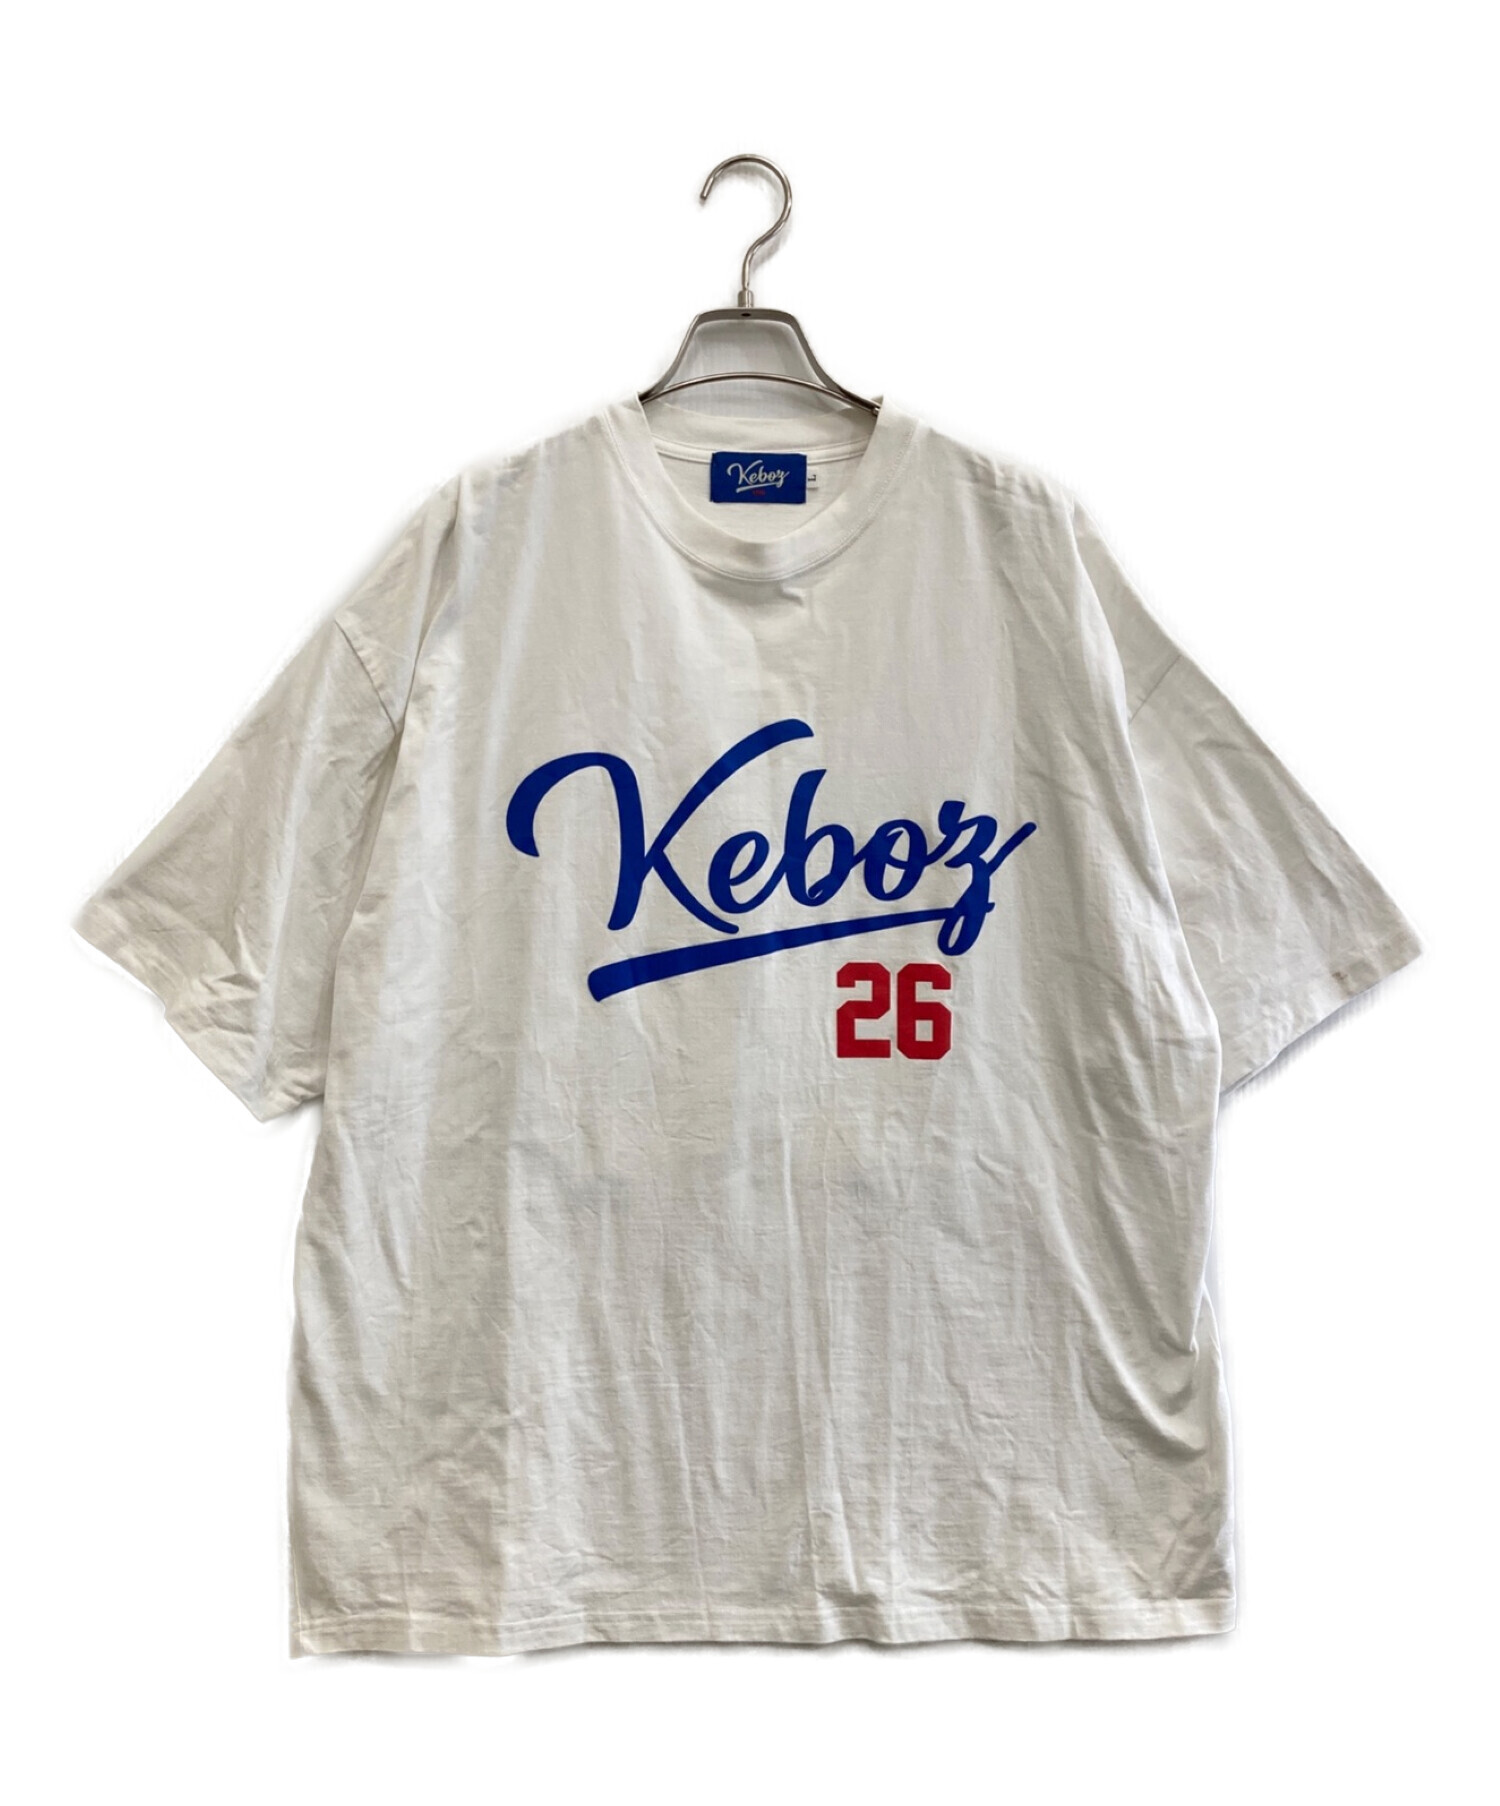 200円引き〜9999円Keboz ケボズ Tシャツ L フロクラブ バックロゴ プリントロゴ